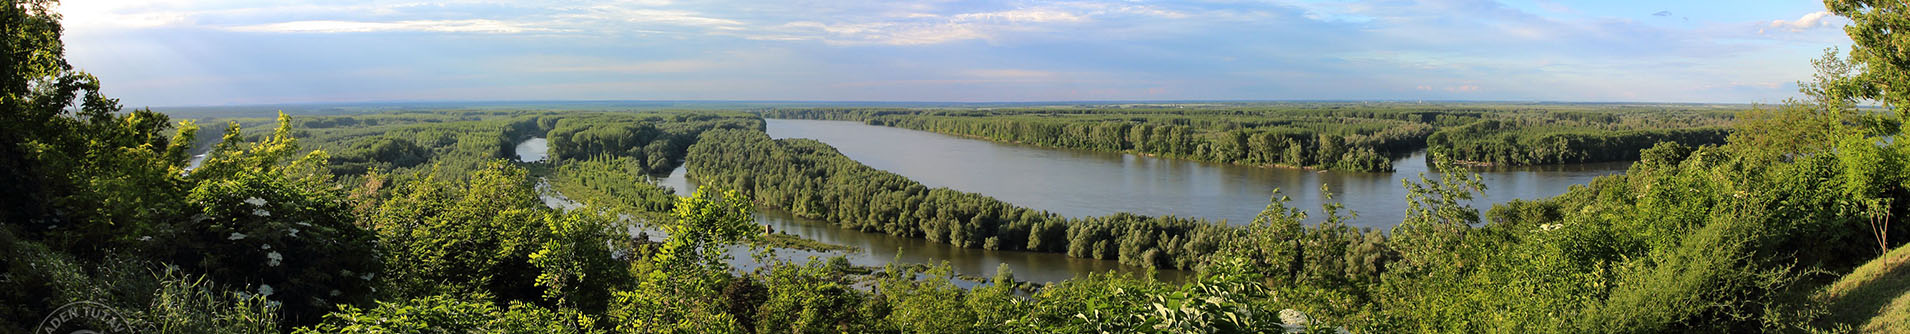 GUIDA TURISTICA - Danube